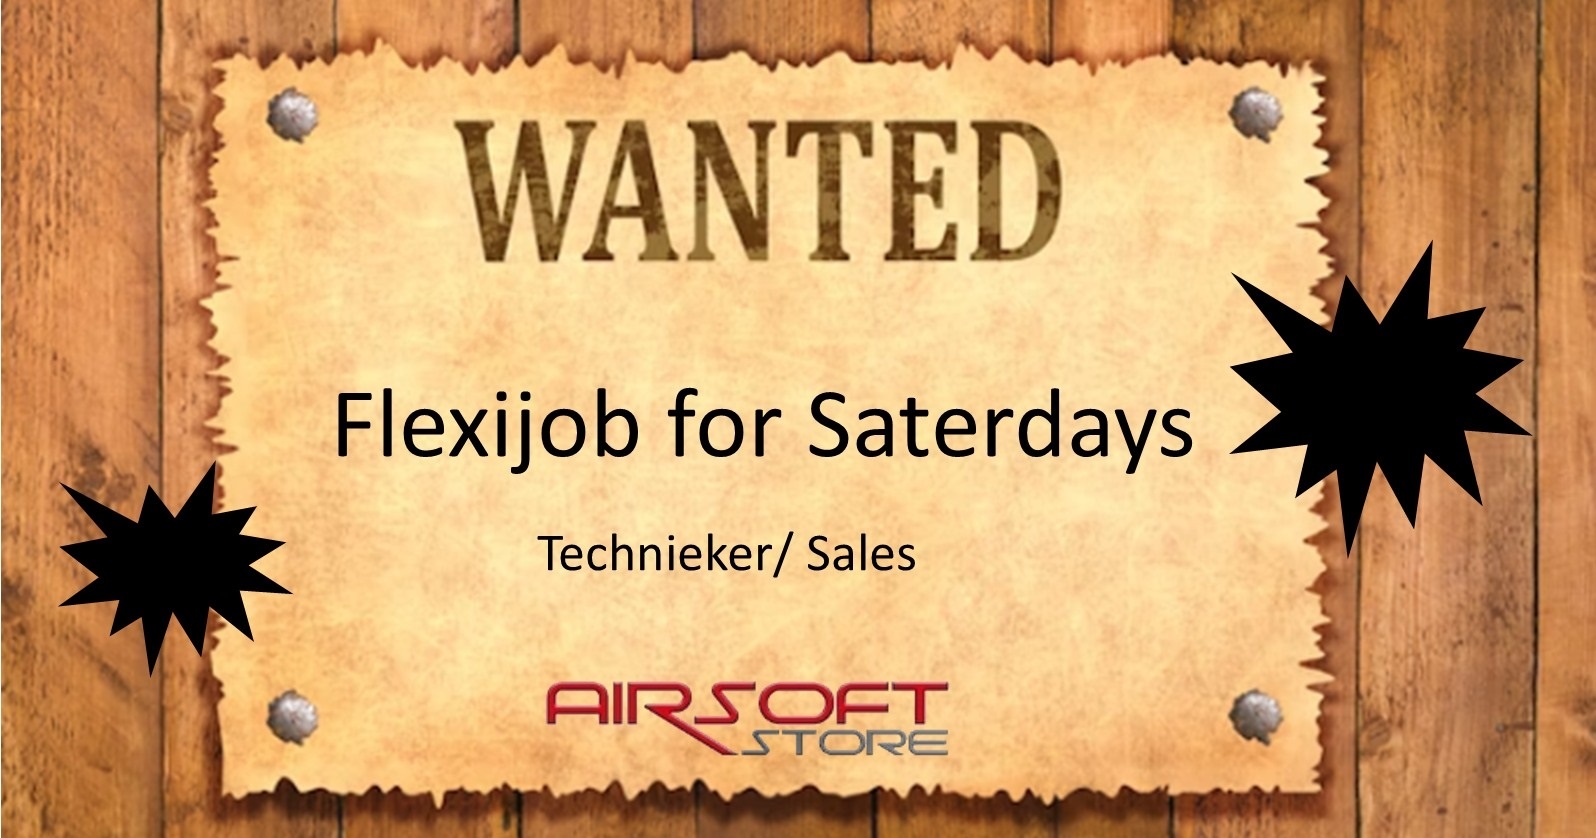 Airsoft Store Flexi job